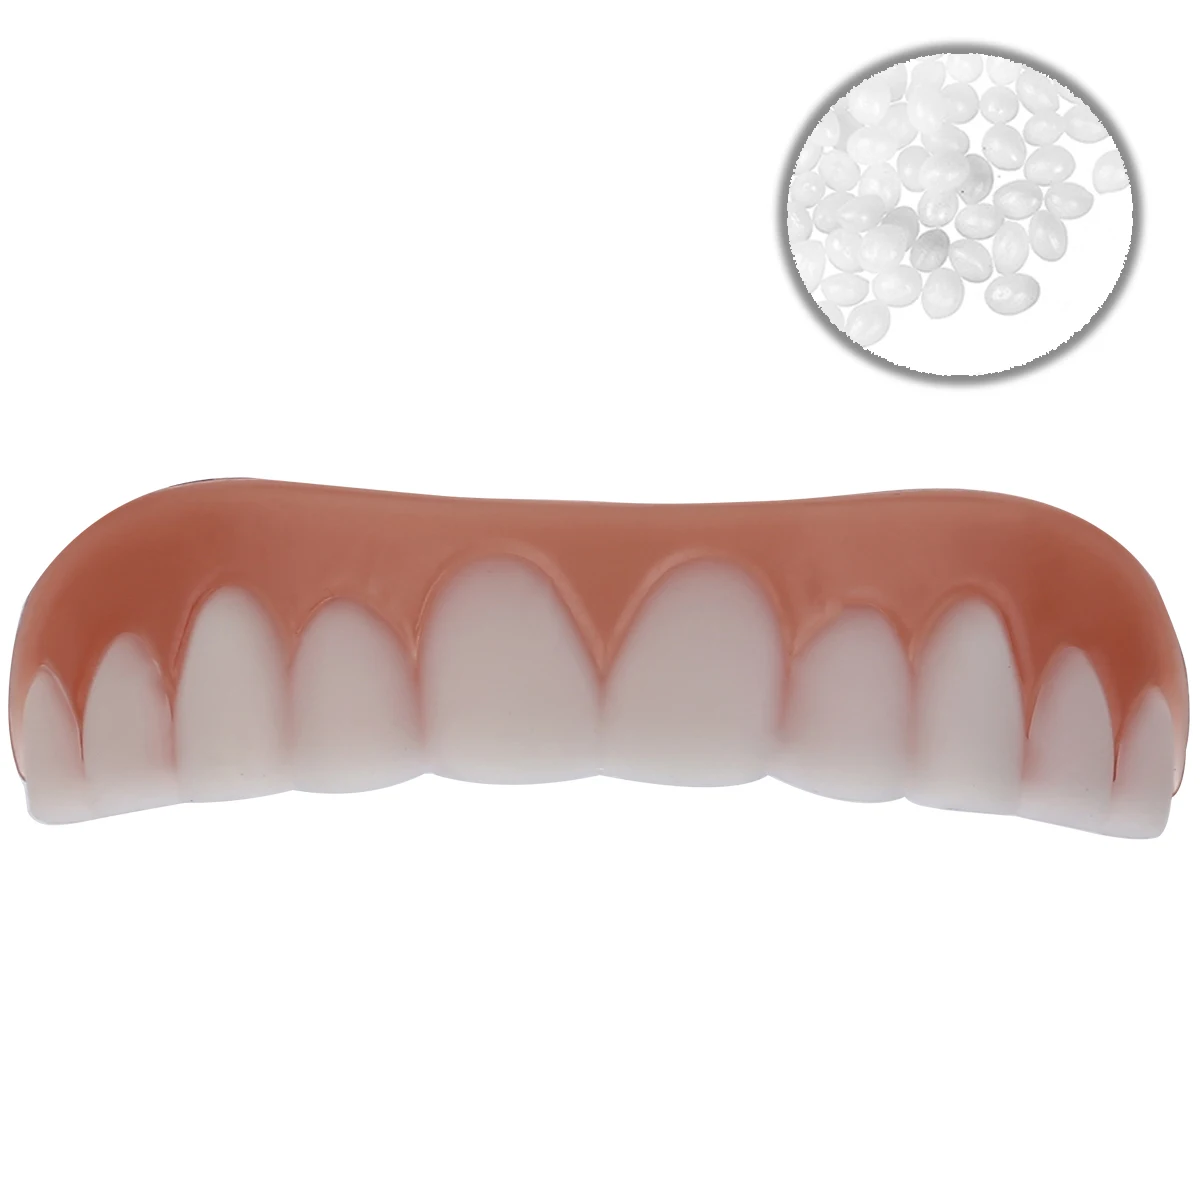 Kosmetische Zahnmedizin Prothese Falsche Zähne Furnier Instant #E0Y 